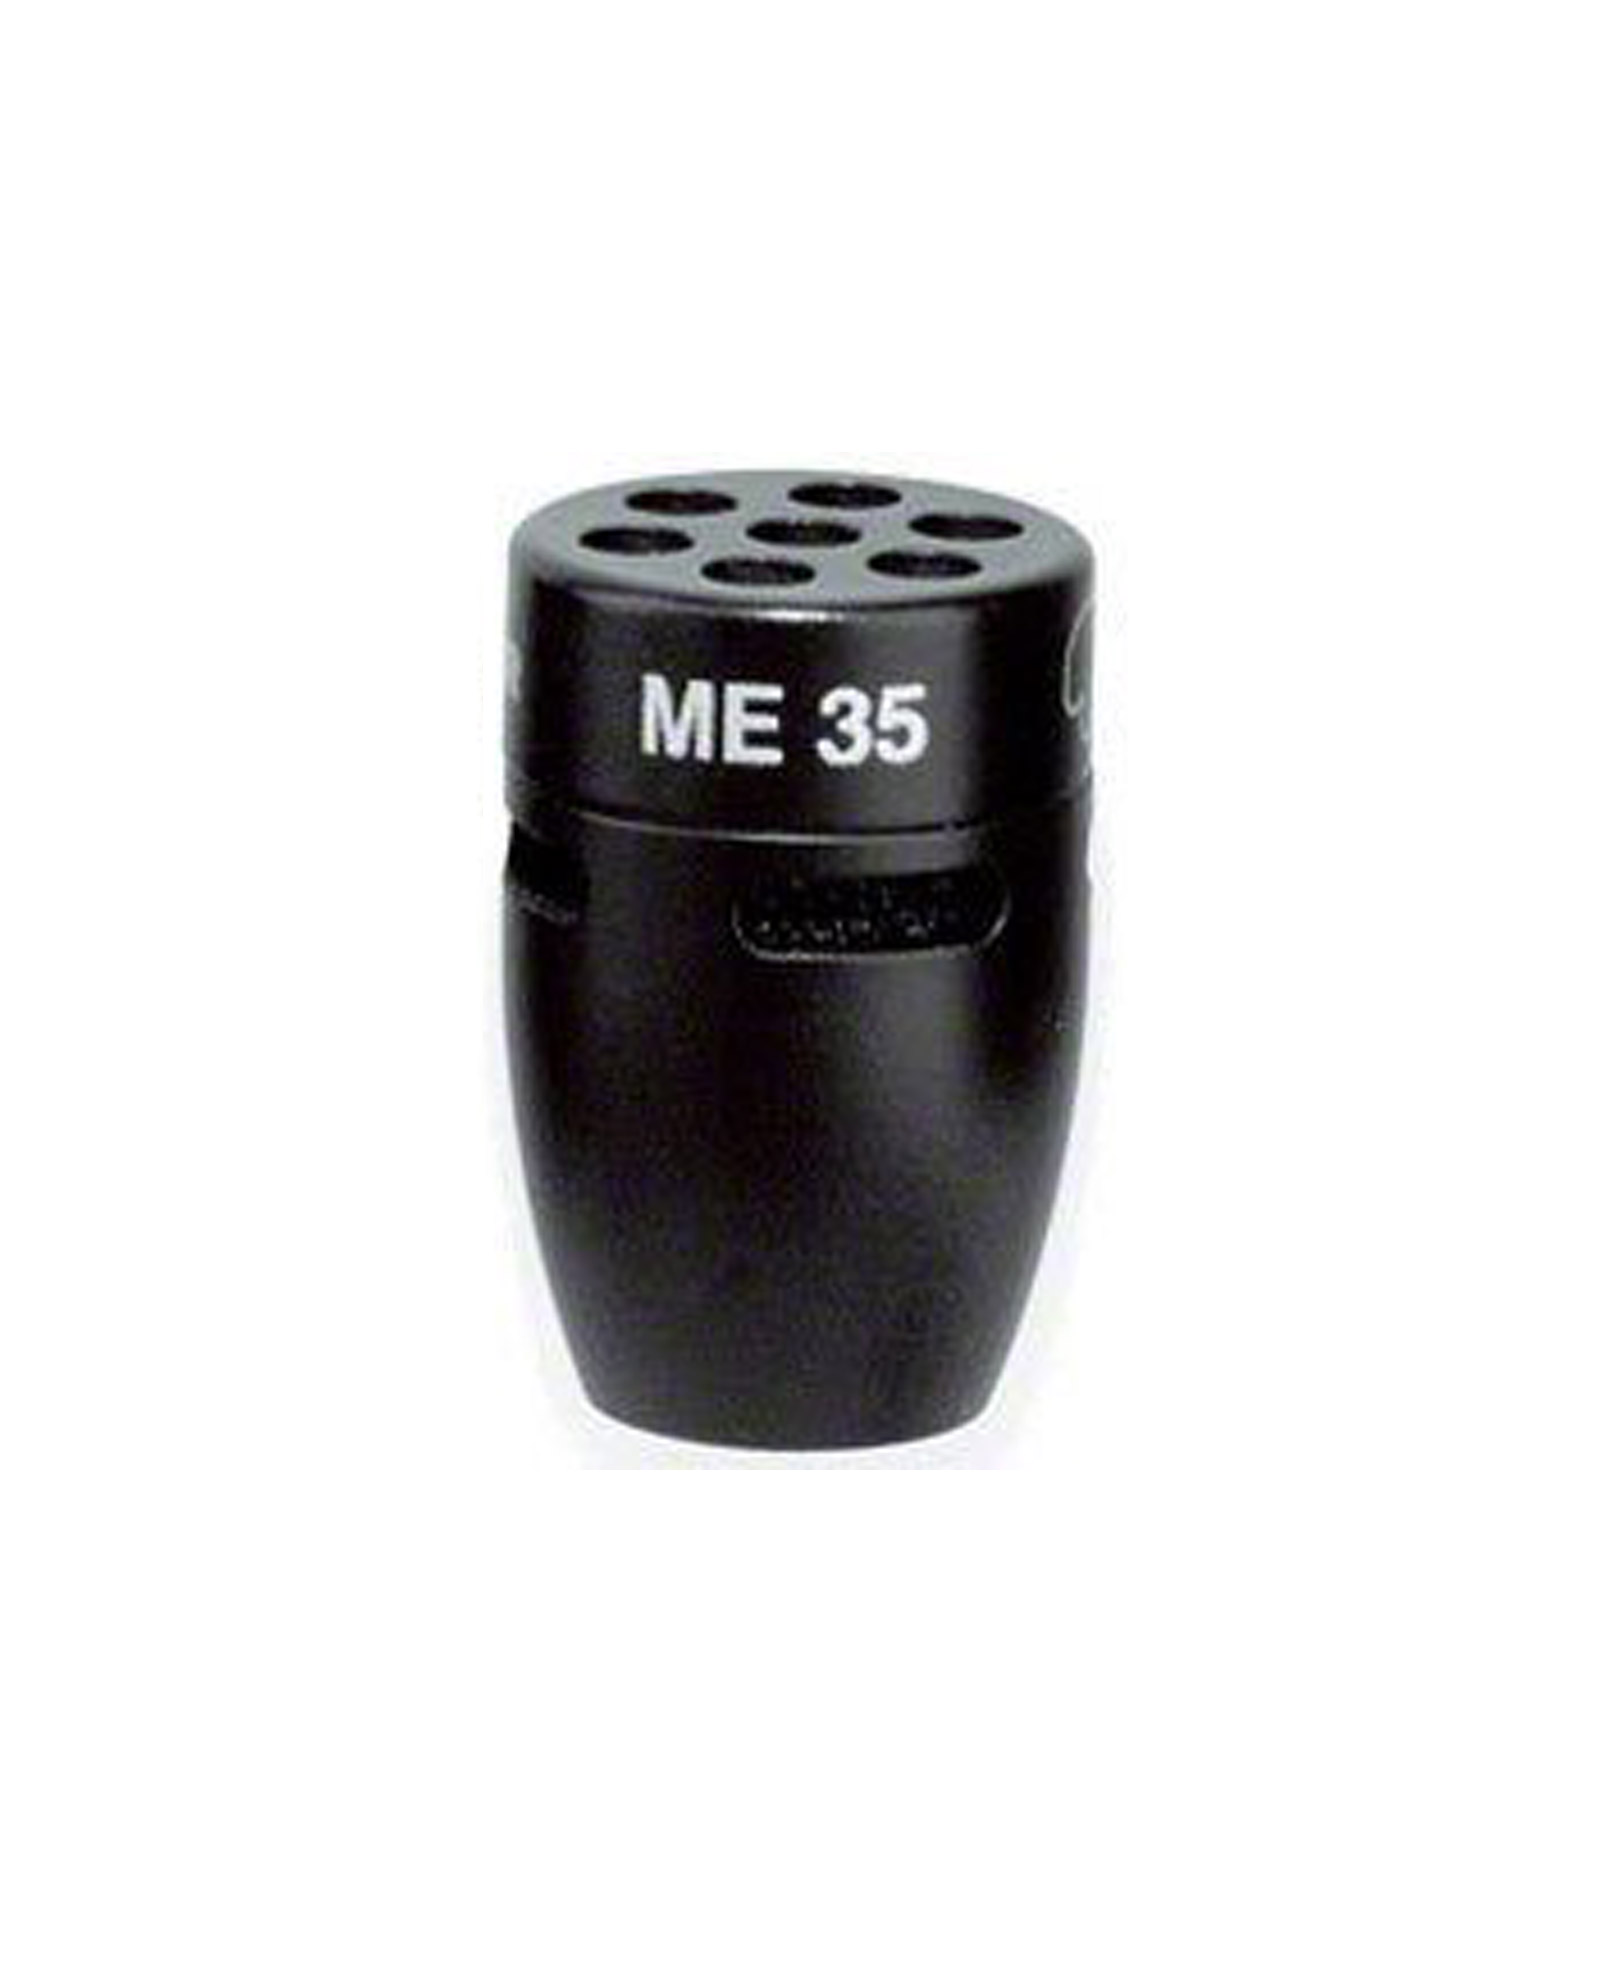 Sennheiser Me 35 Permanently Polarised Cardioid Microphone Capsule